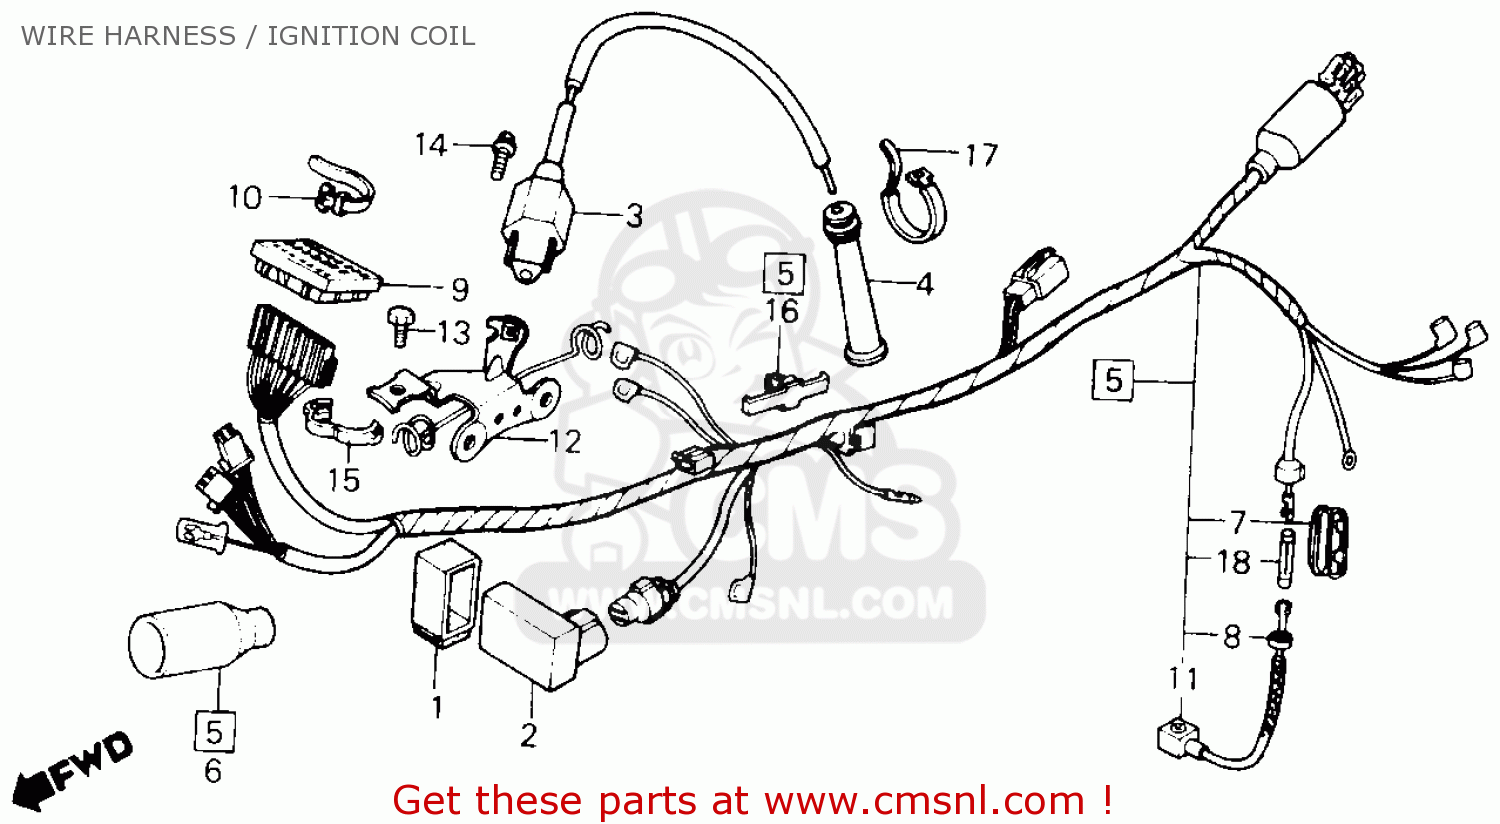 1985 Honda xl600r wiring diagram #7